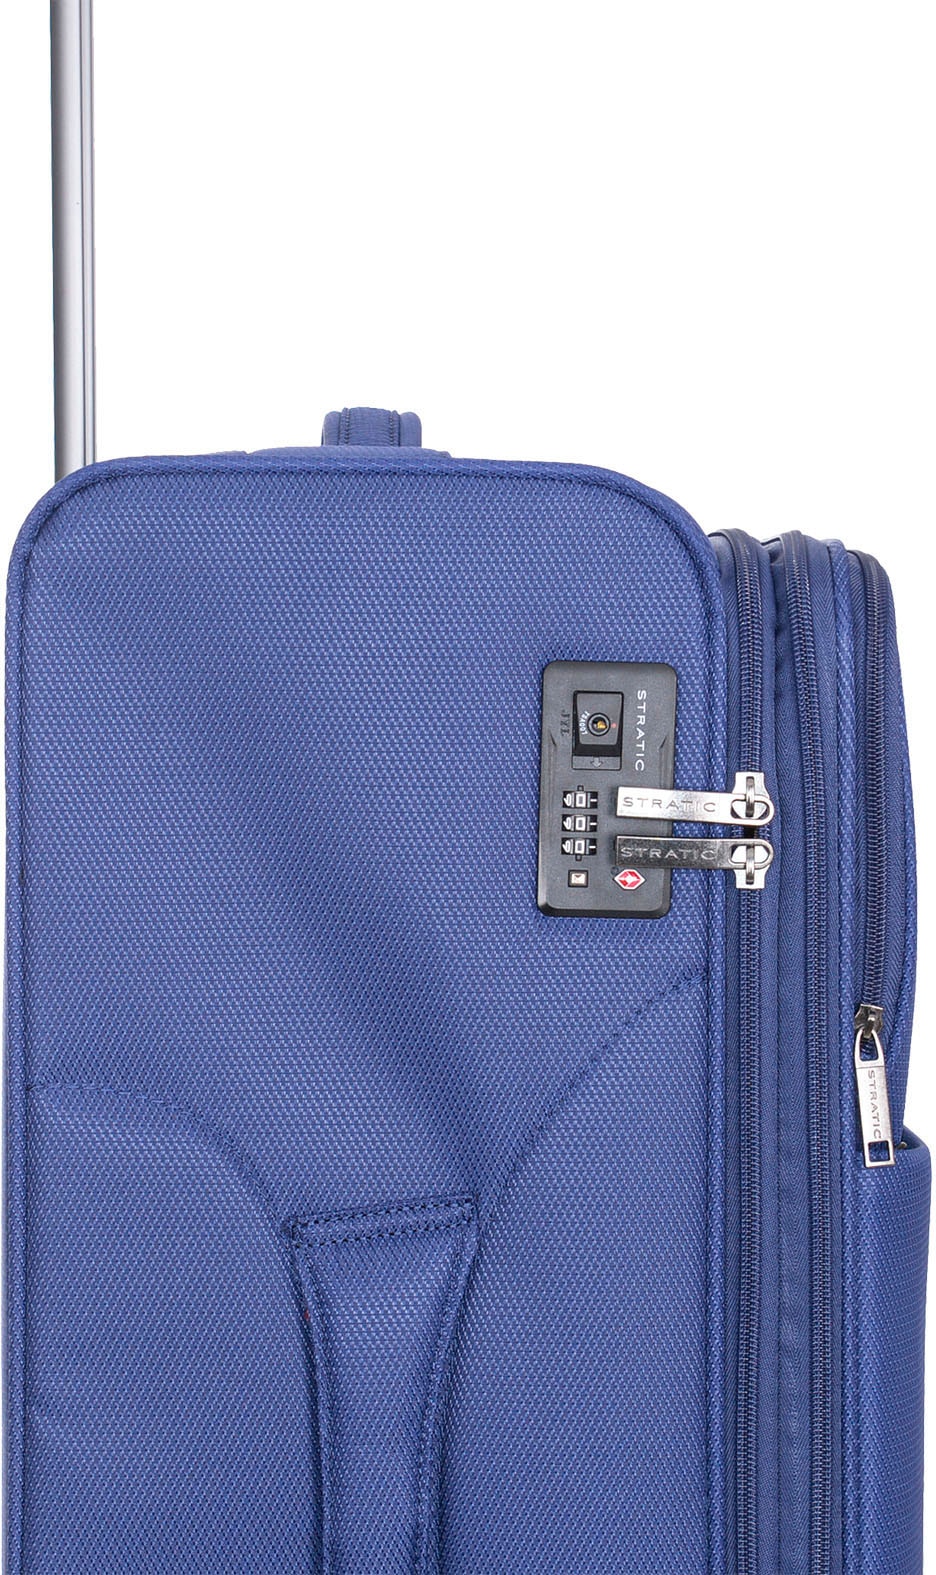 Stratic Weichgepäck-Trolley »Stratic Light + L, dark blue«, 4 Rollen, Reisekoffer großer Koffer Aufgabegepäck TSA-Zahlenschloss